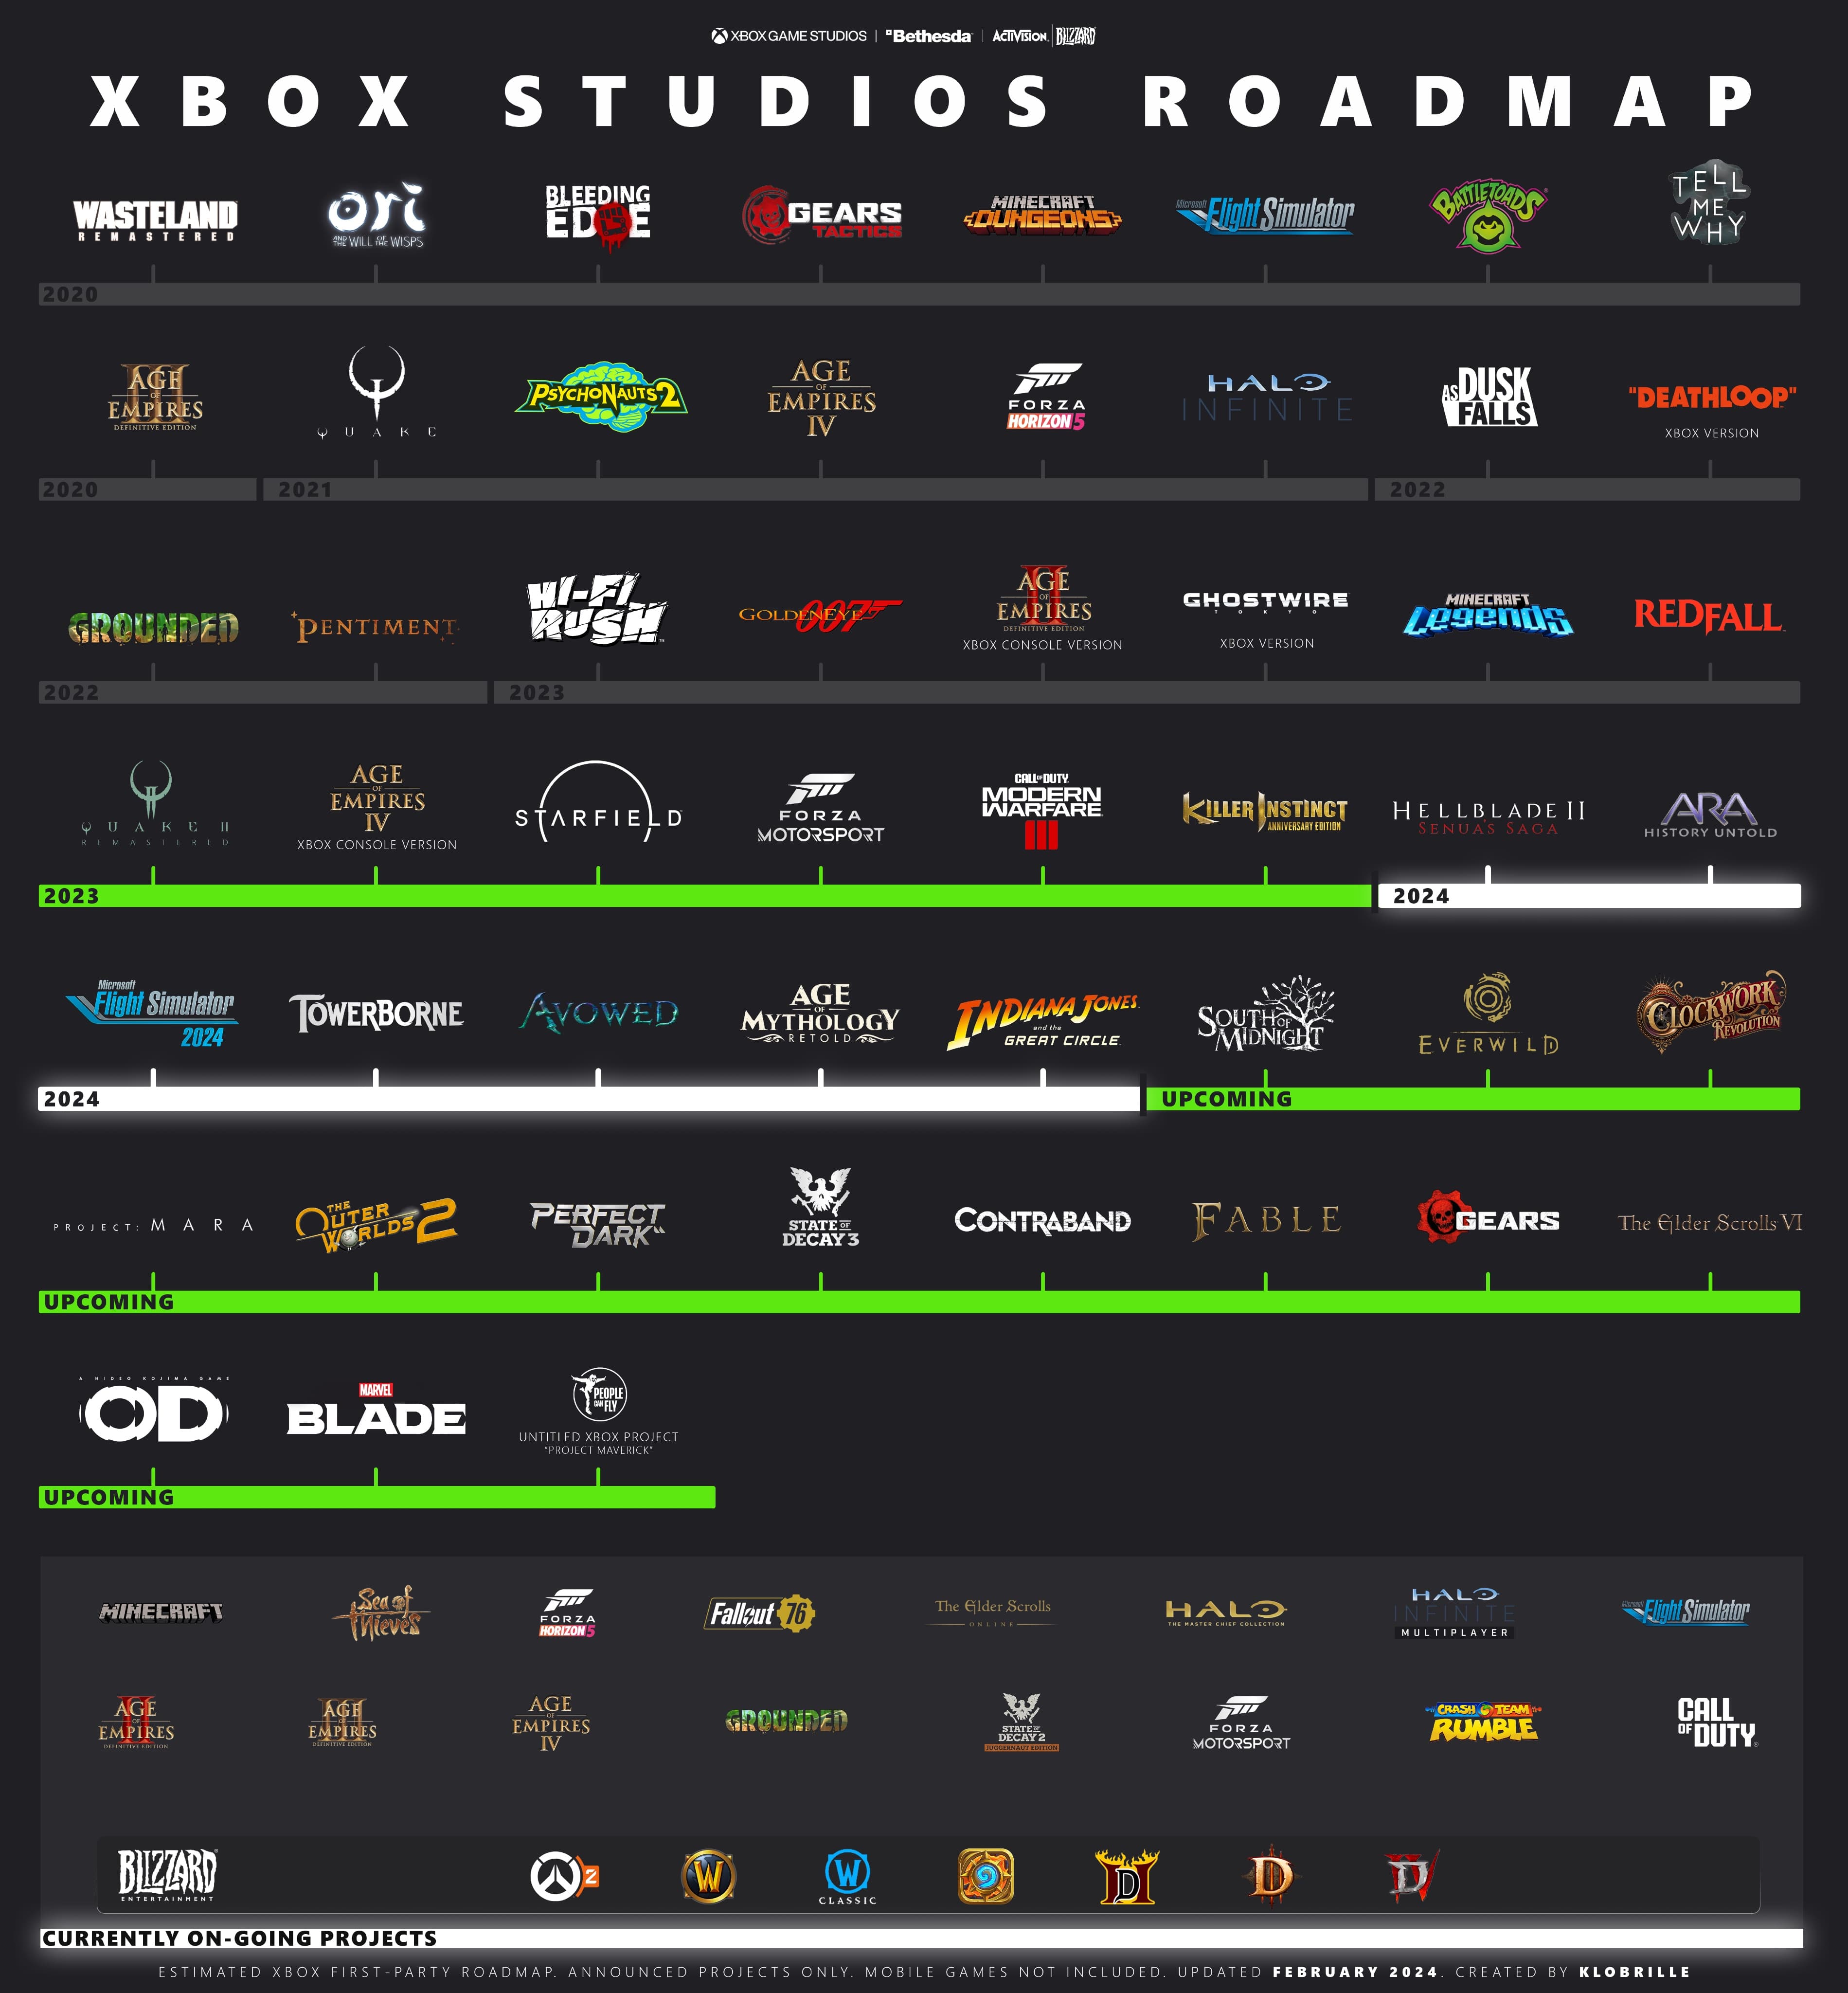 松鼠哥揭示未来Xbox游戏生态布局新篇章，全新路线图震撼发布